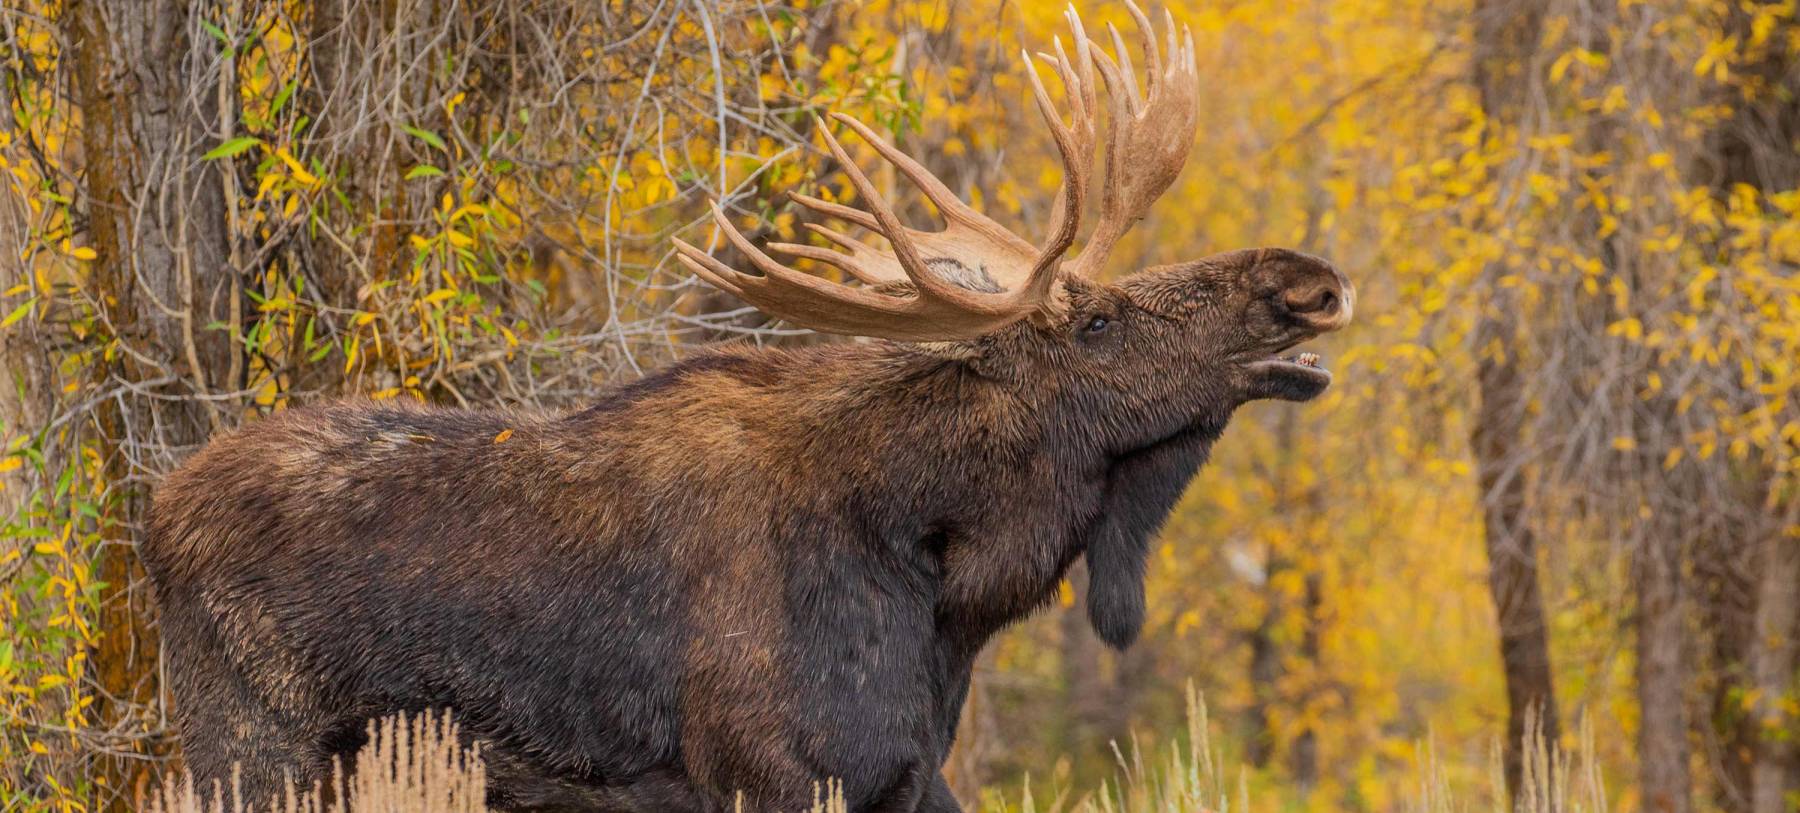 Bull Moose In Autumn Fall